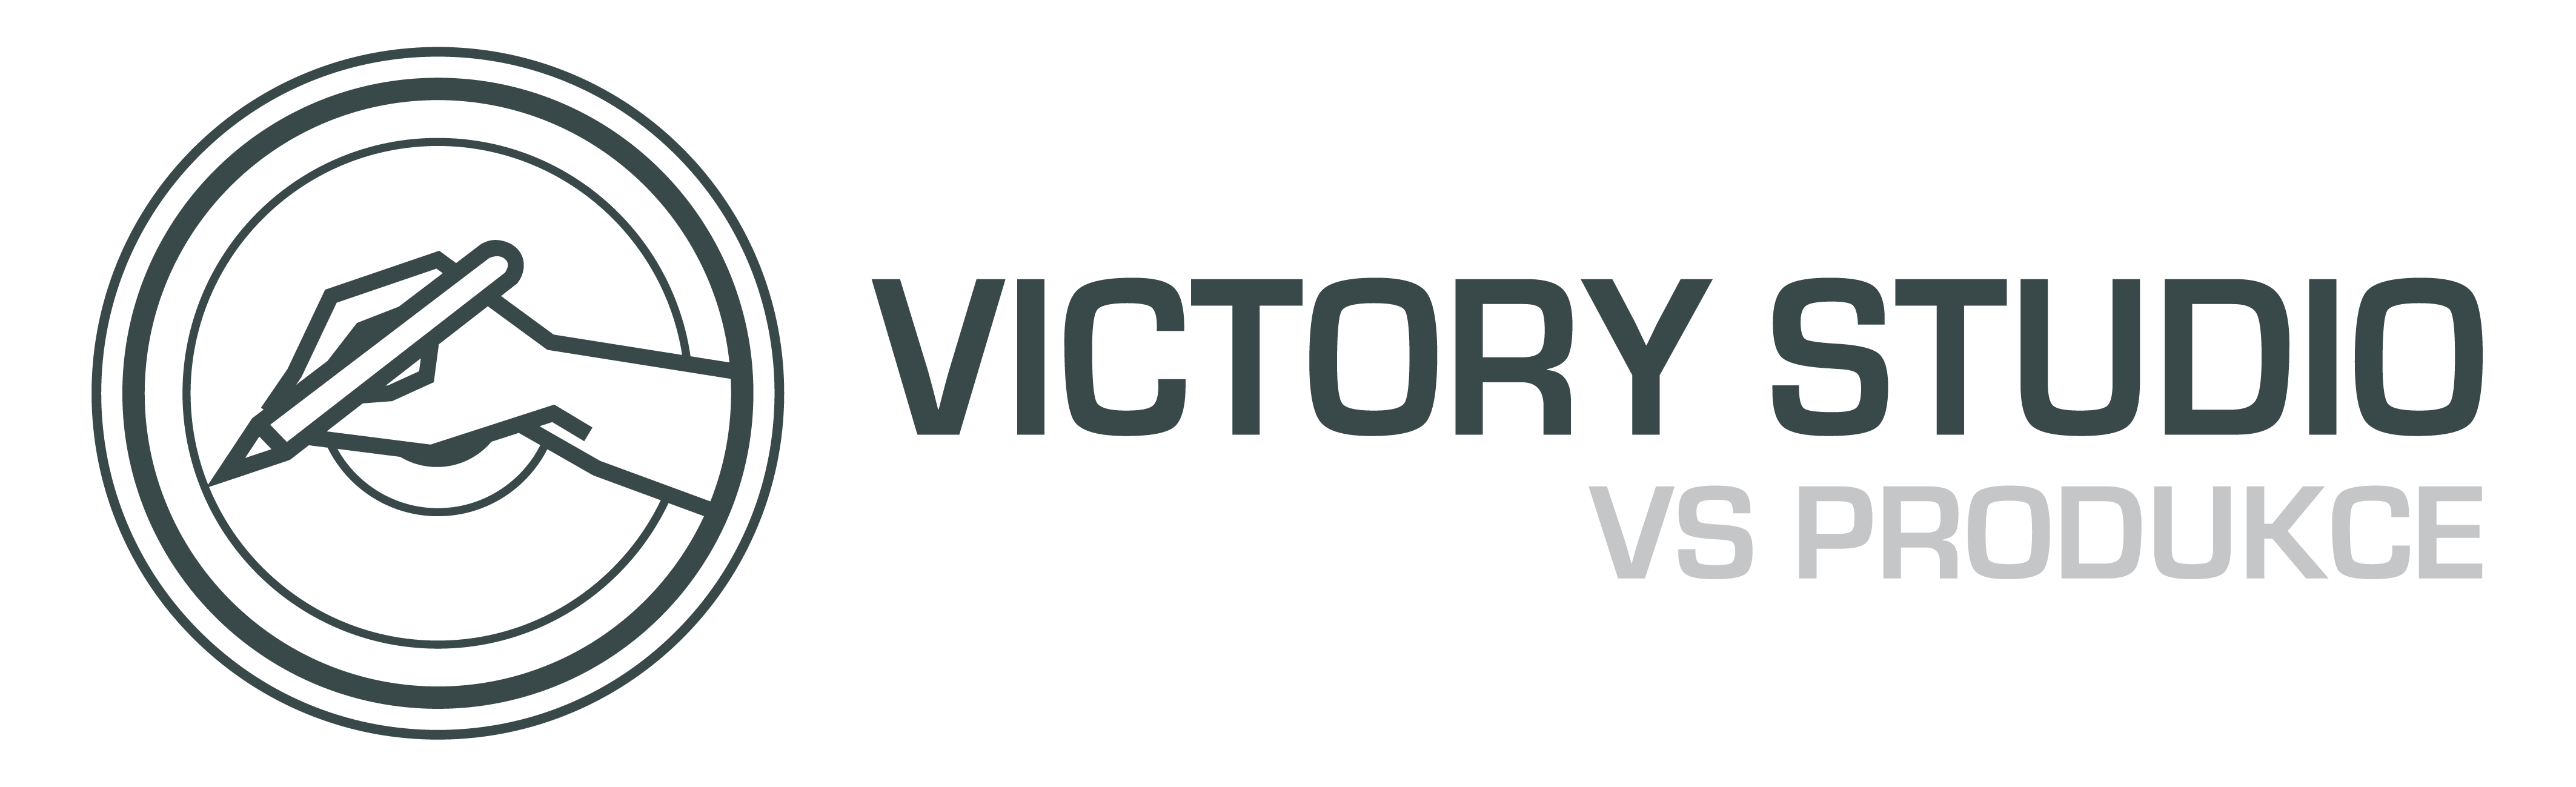 VICTORY STUDIO